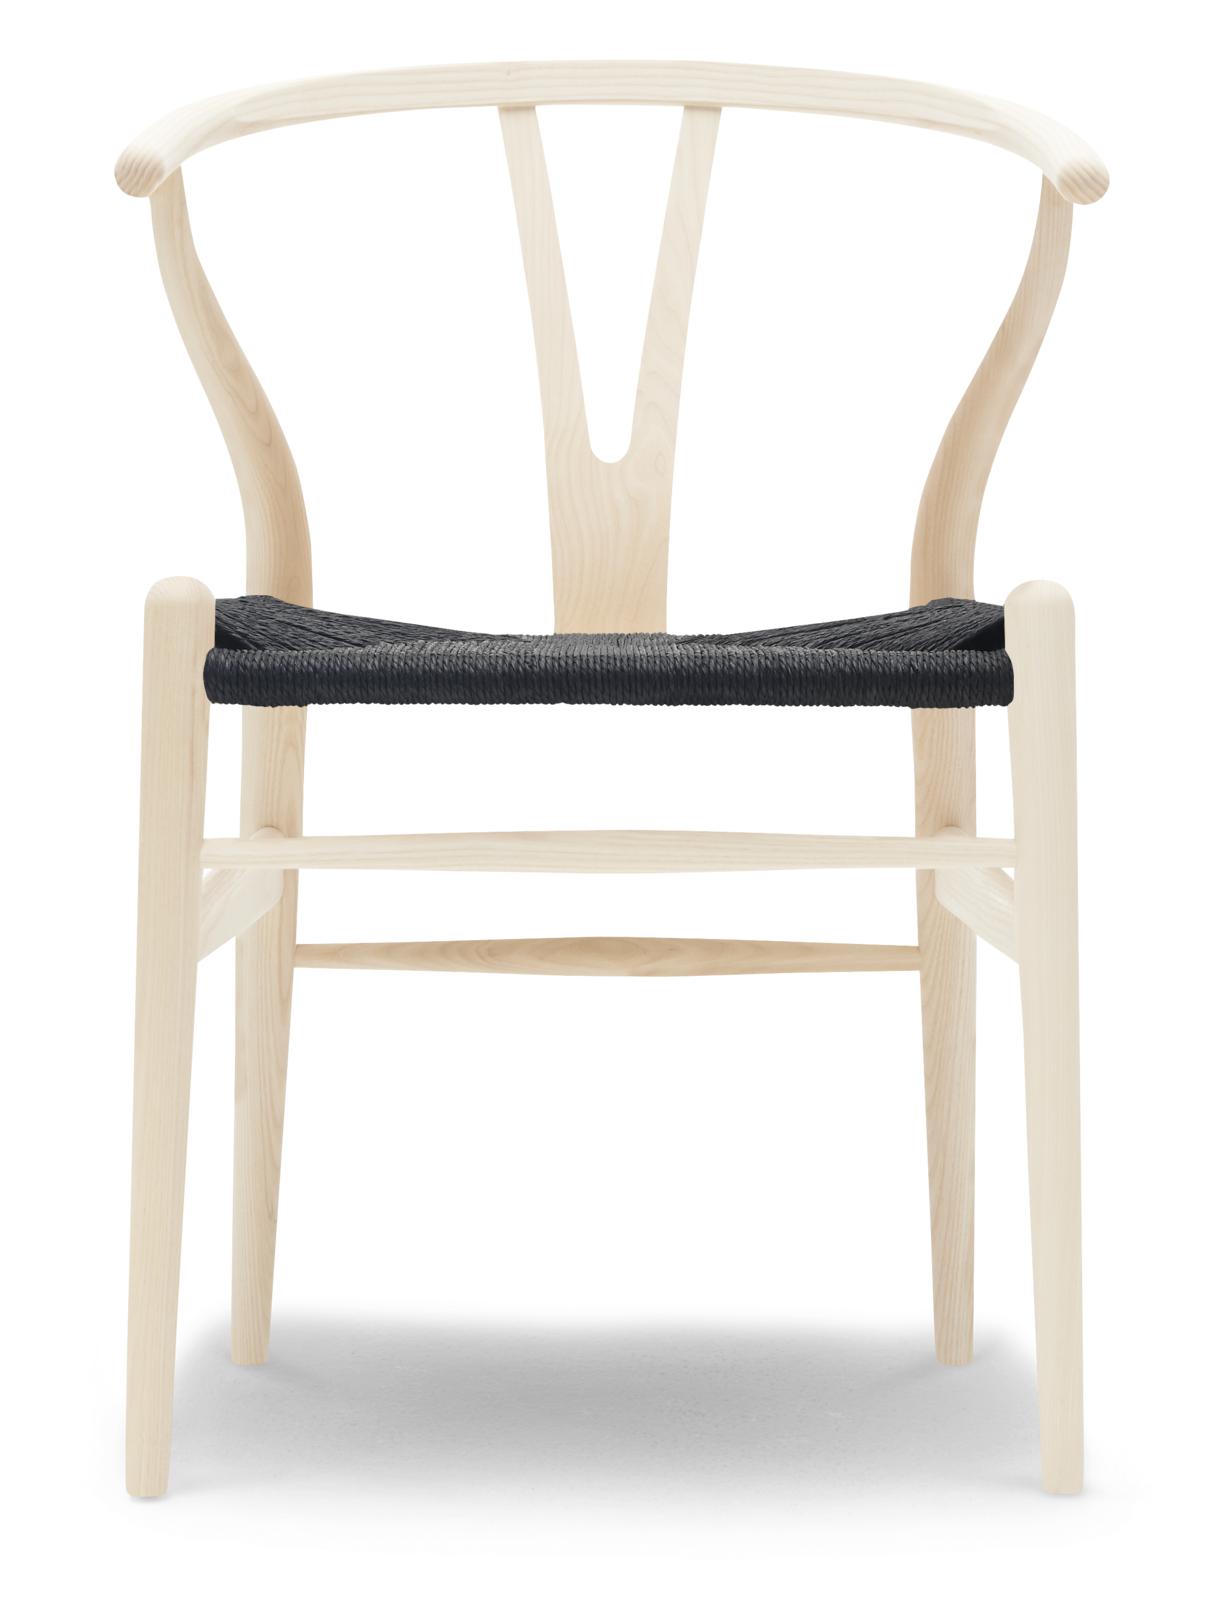 Carl hansen ch24 y chaise chaise hêtre savon, cordon noir